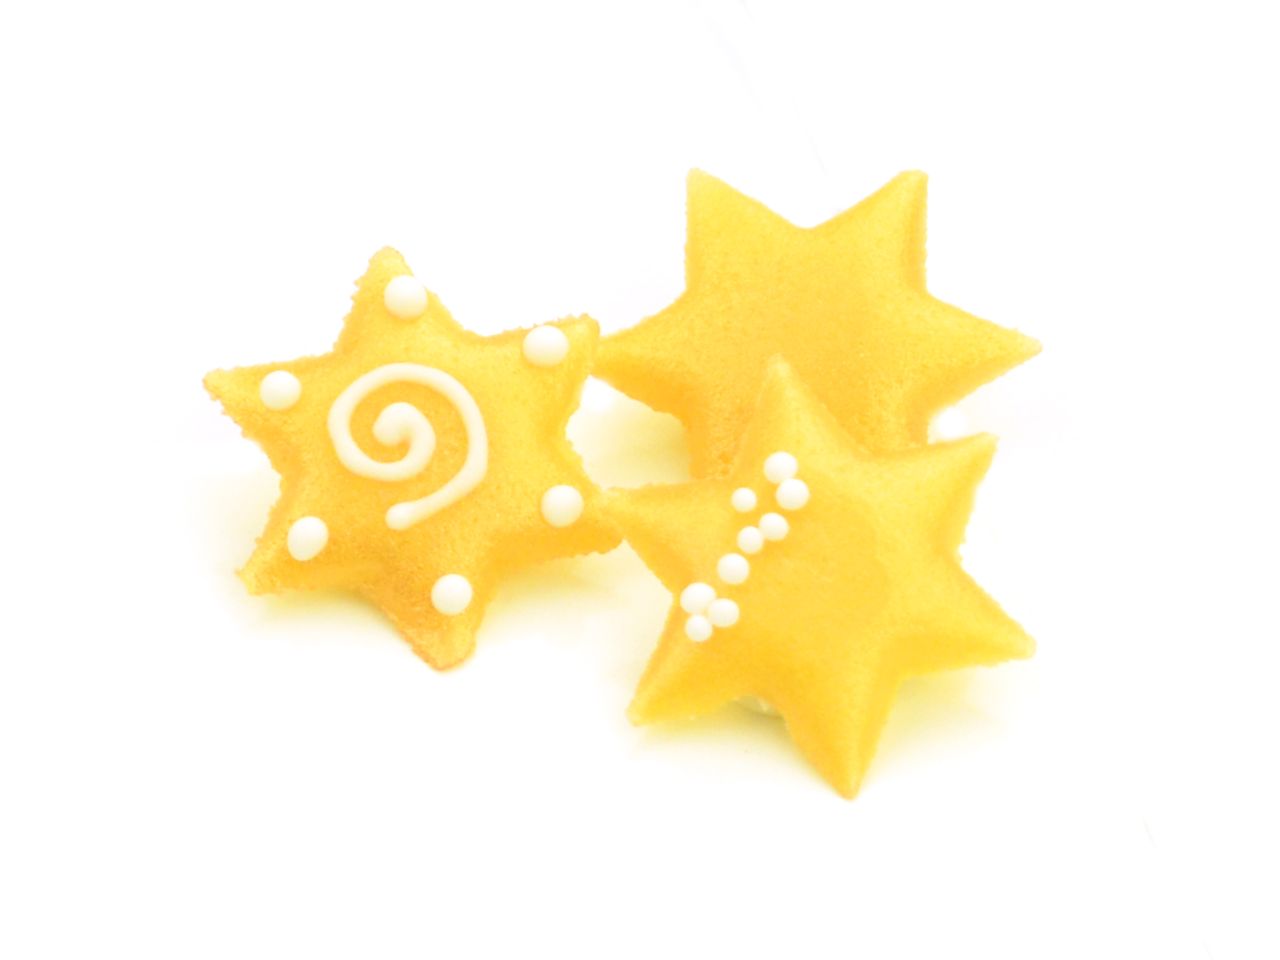 Marzipan-Dekor: Sterne, 3 Designs, Gelb & Weiß, 100 Stück à 30 x 3 mm